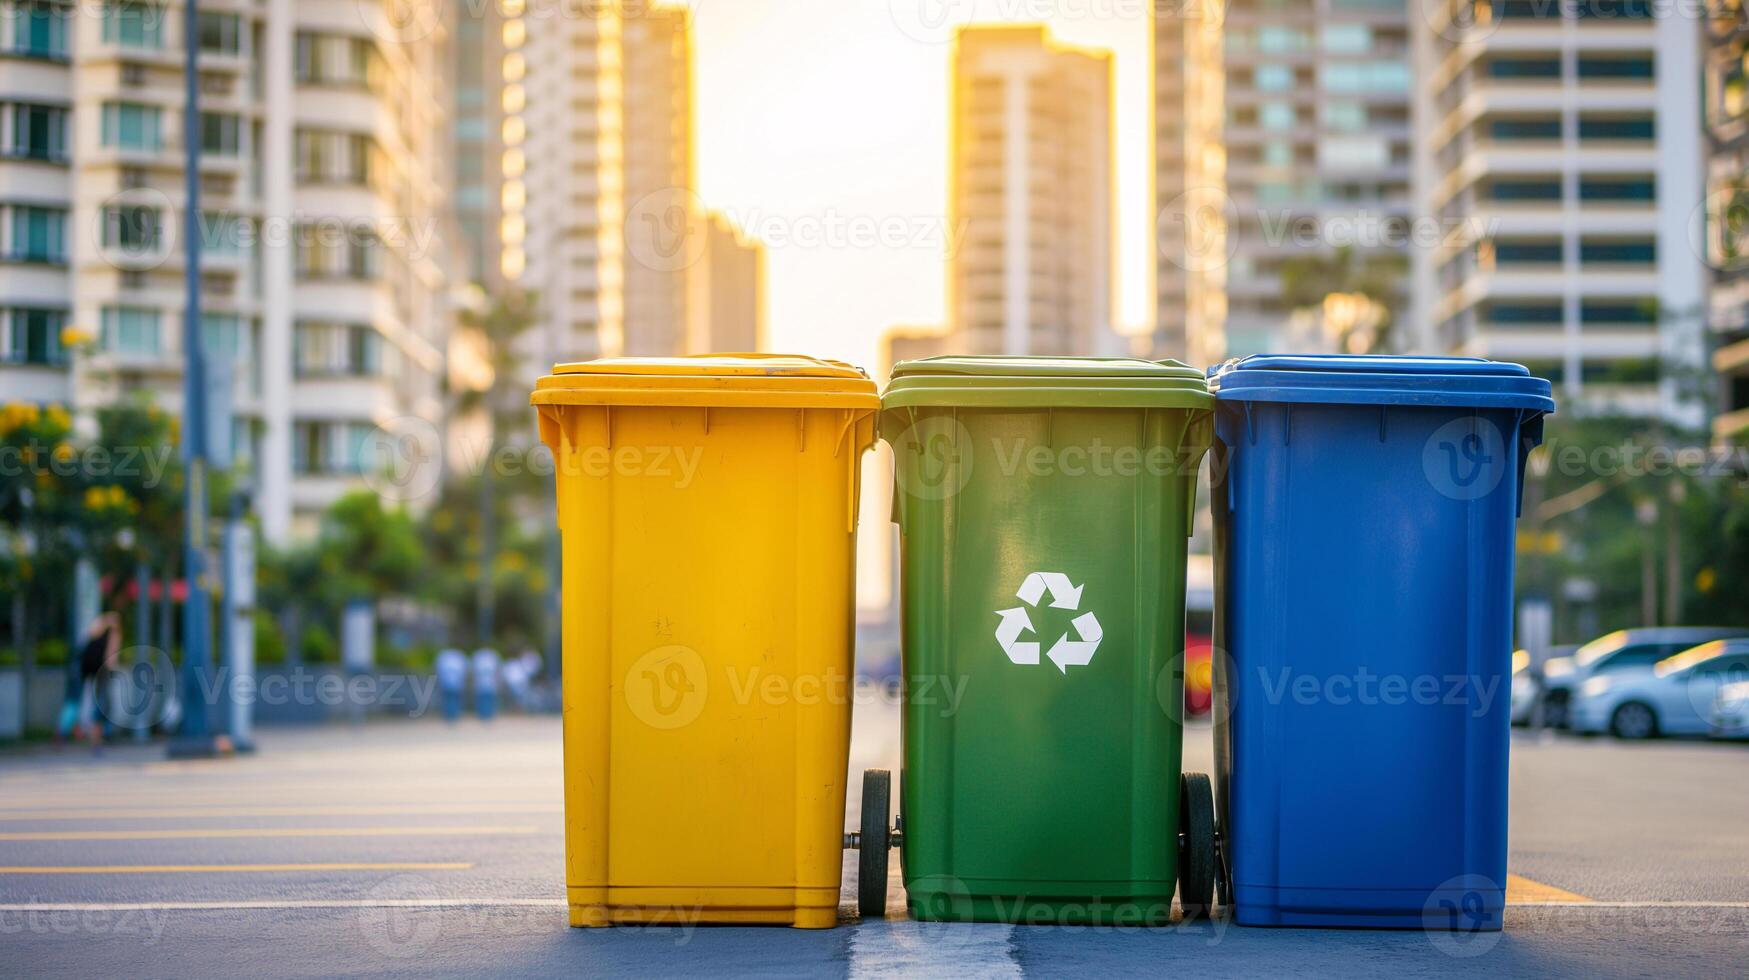 vistoso reciclar contenedores para residuos separación en ciudad acera foto